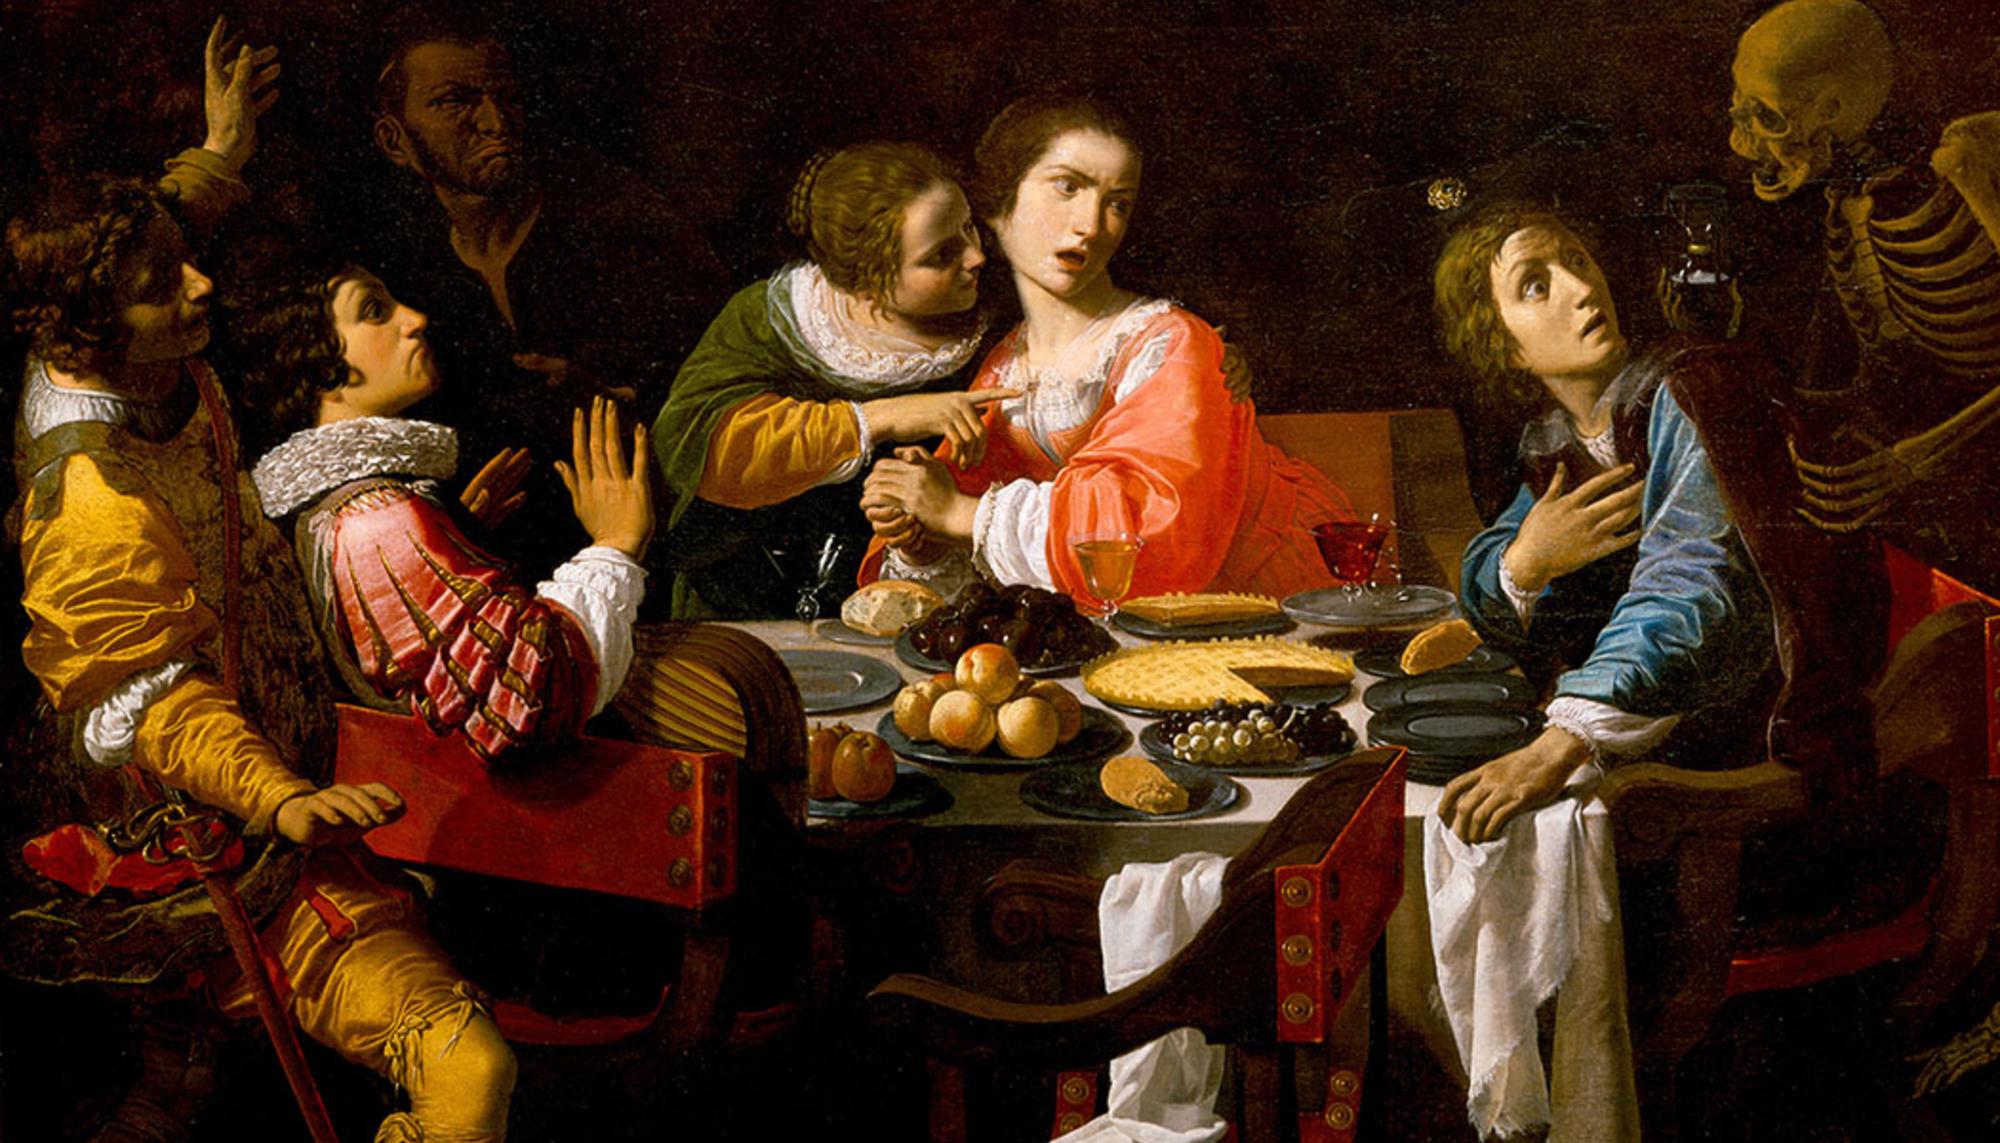 La Morte appare ai convitati (Memento Mori), de Giovanni Martinelli, 1635.